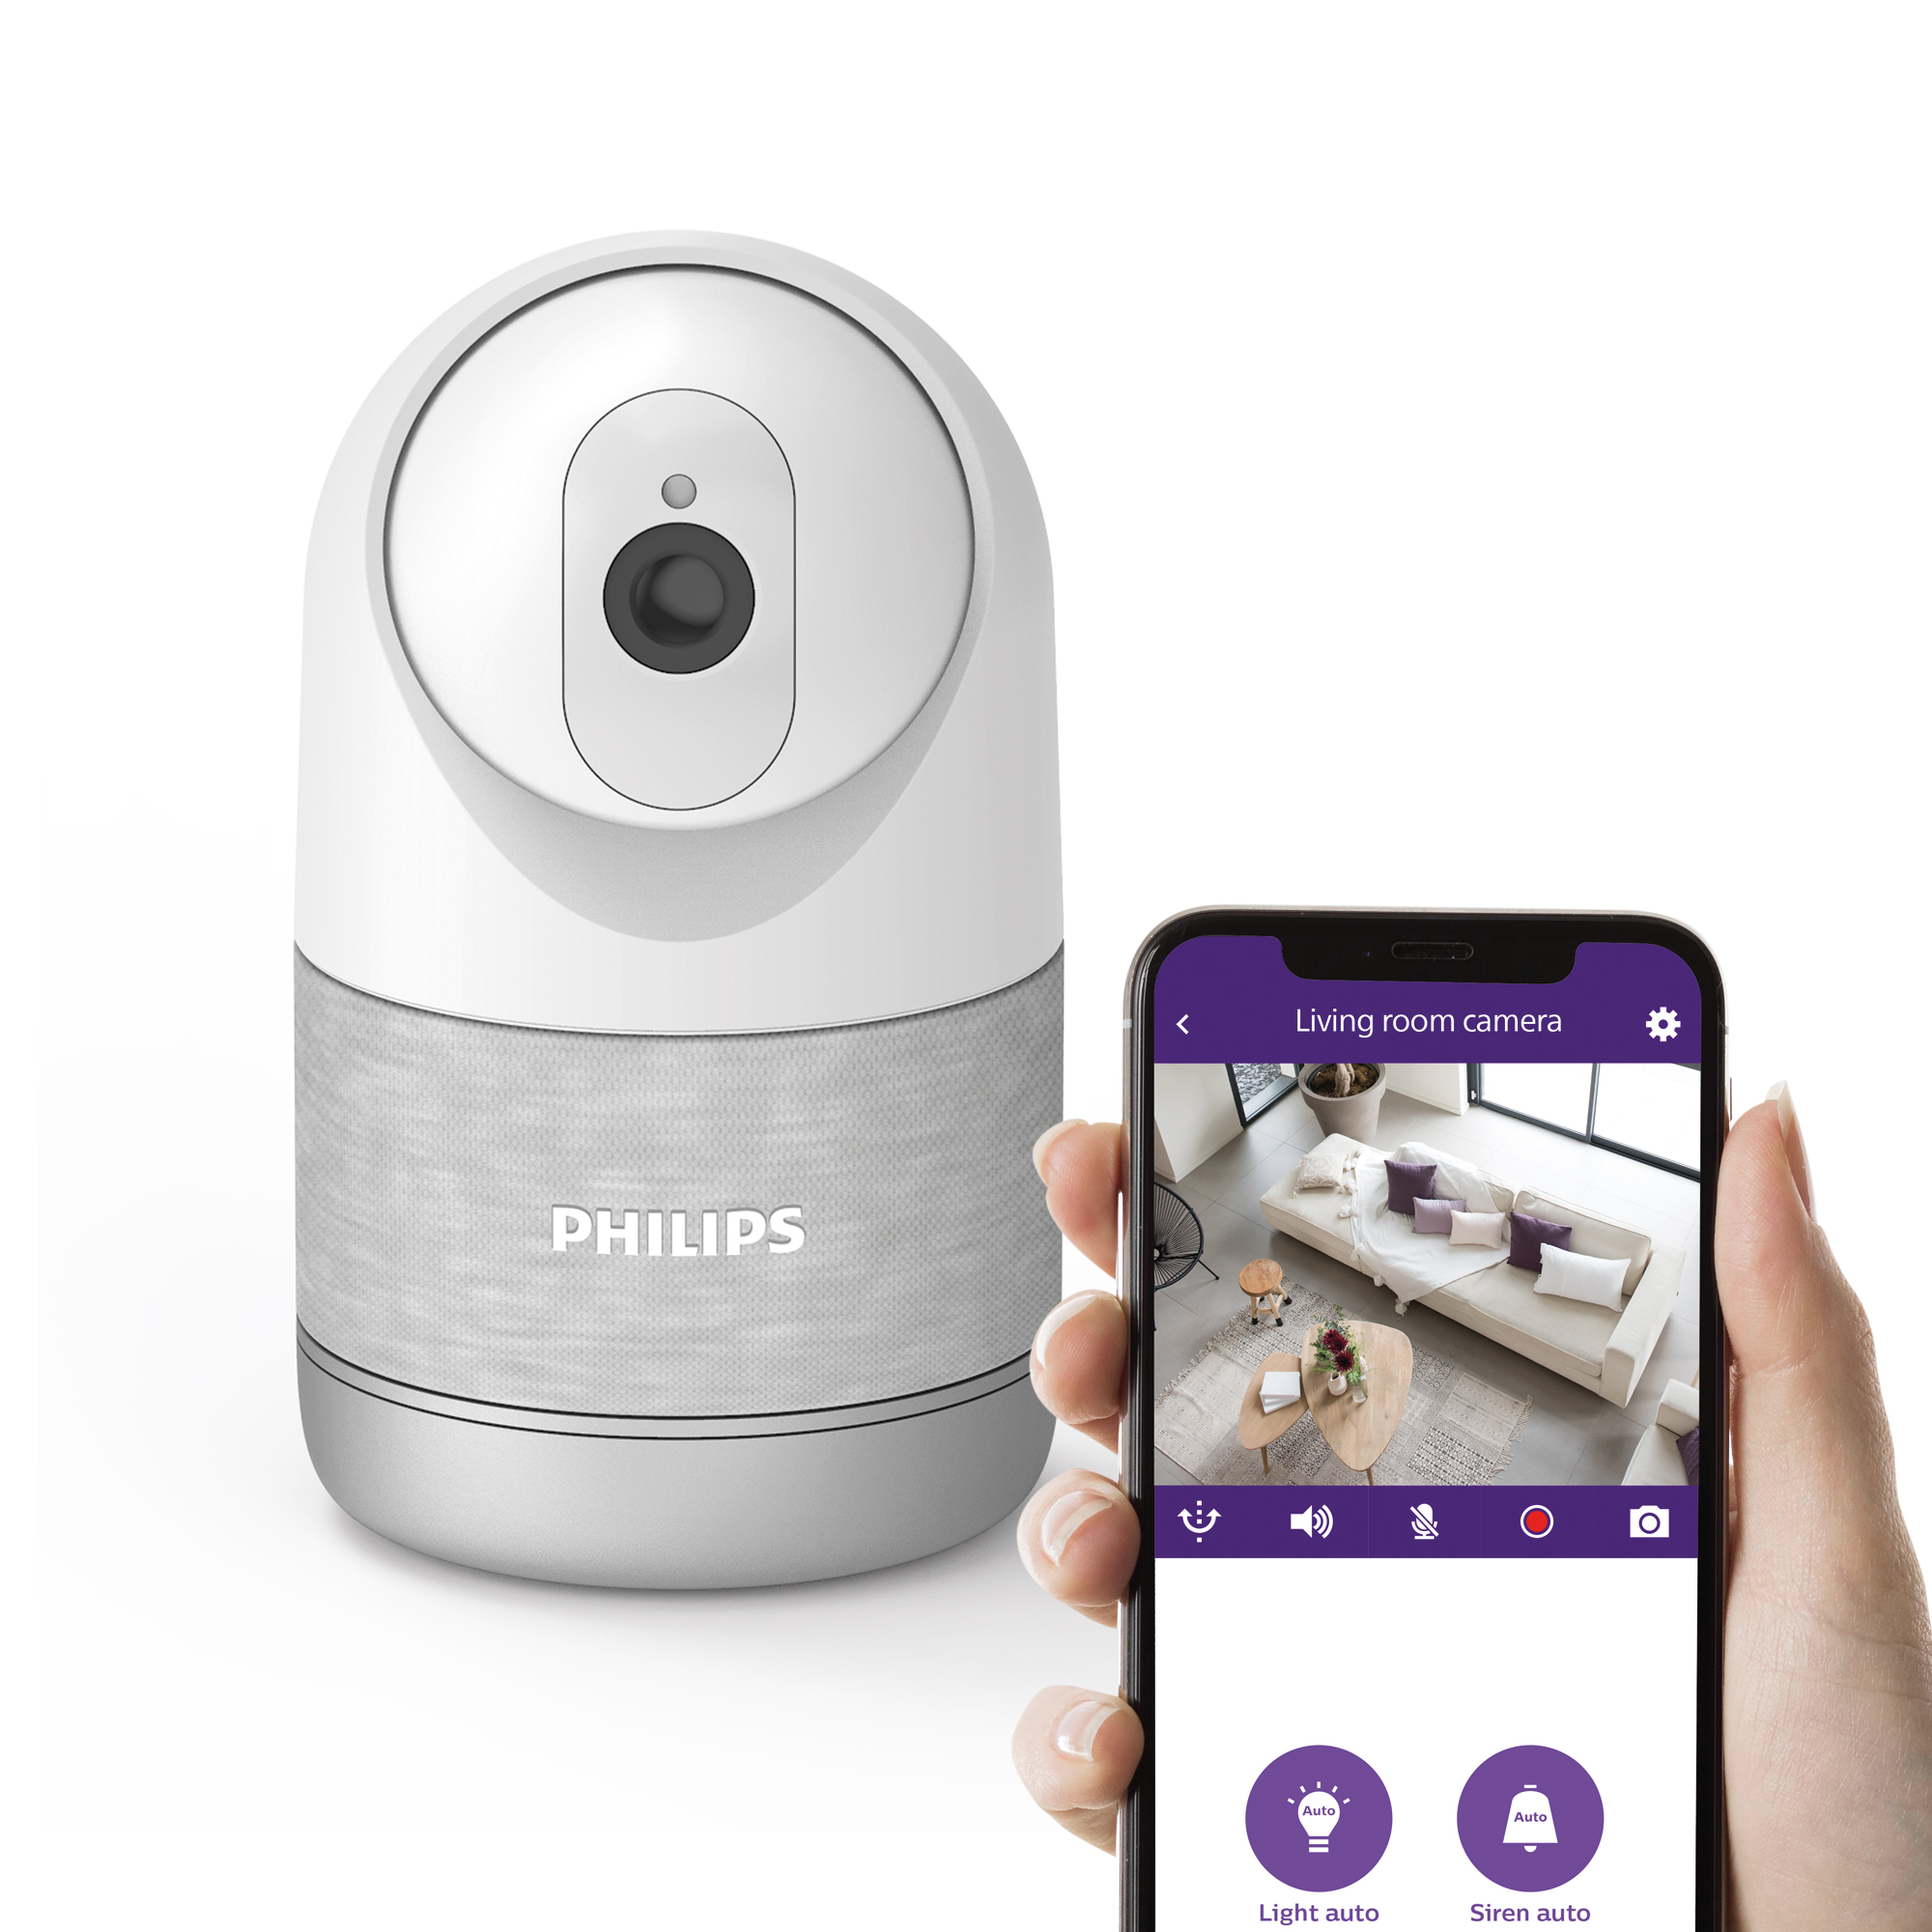 Philips Caméra intérieure motorisée connectée résolution 2k mode privé renforcé détection humaine fine - WelcomeEye Look 531051